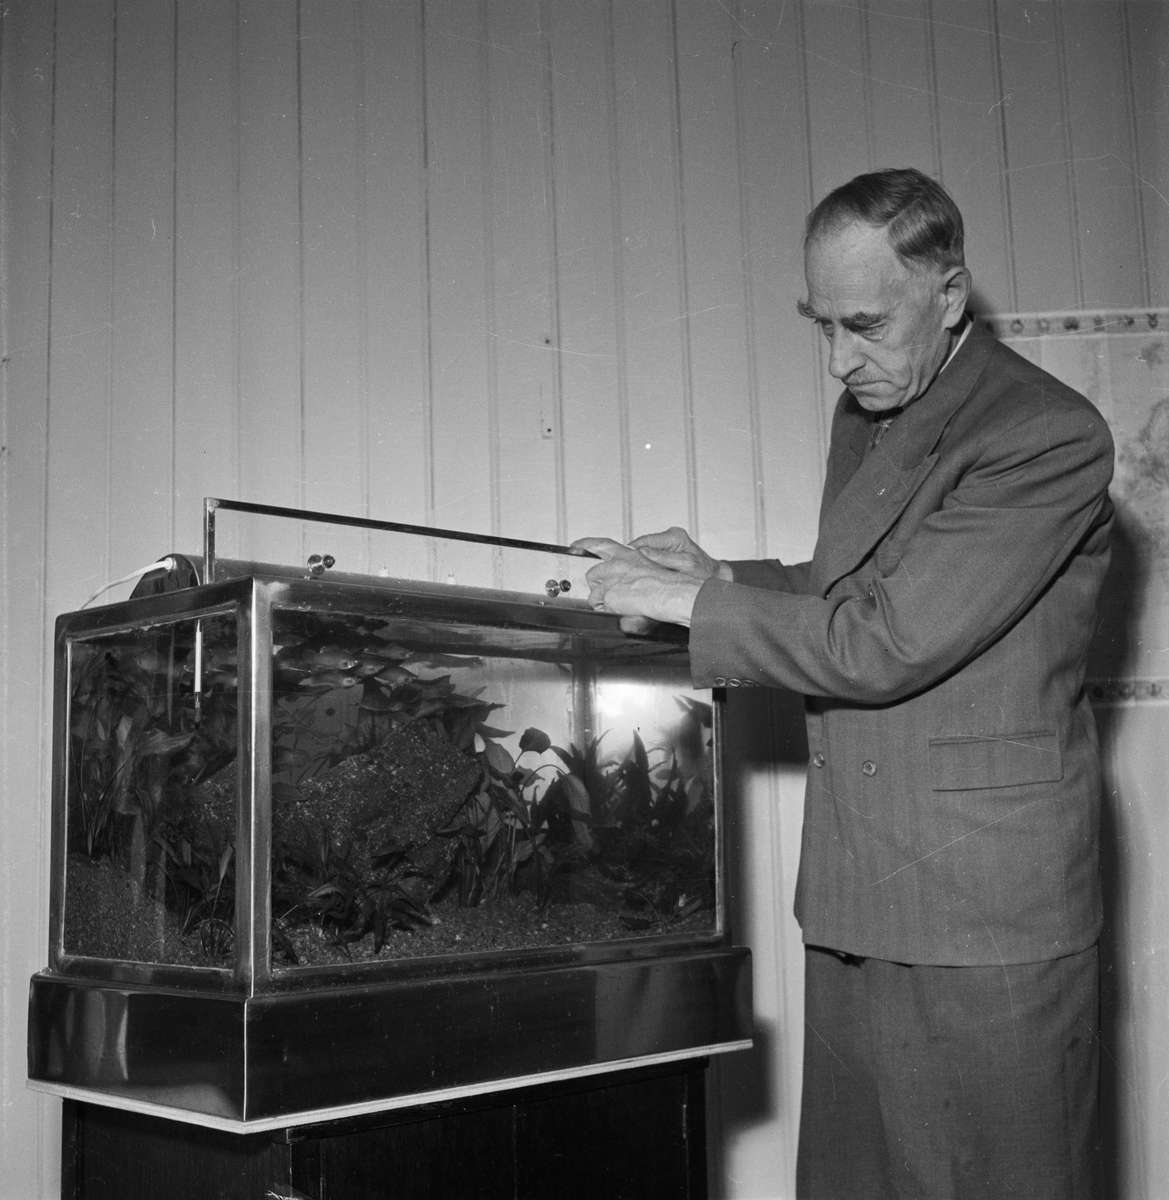 Akvarieutställning, Uppsala 1953